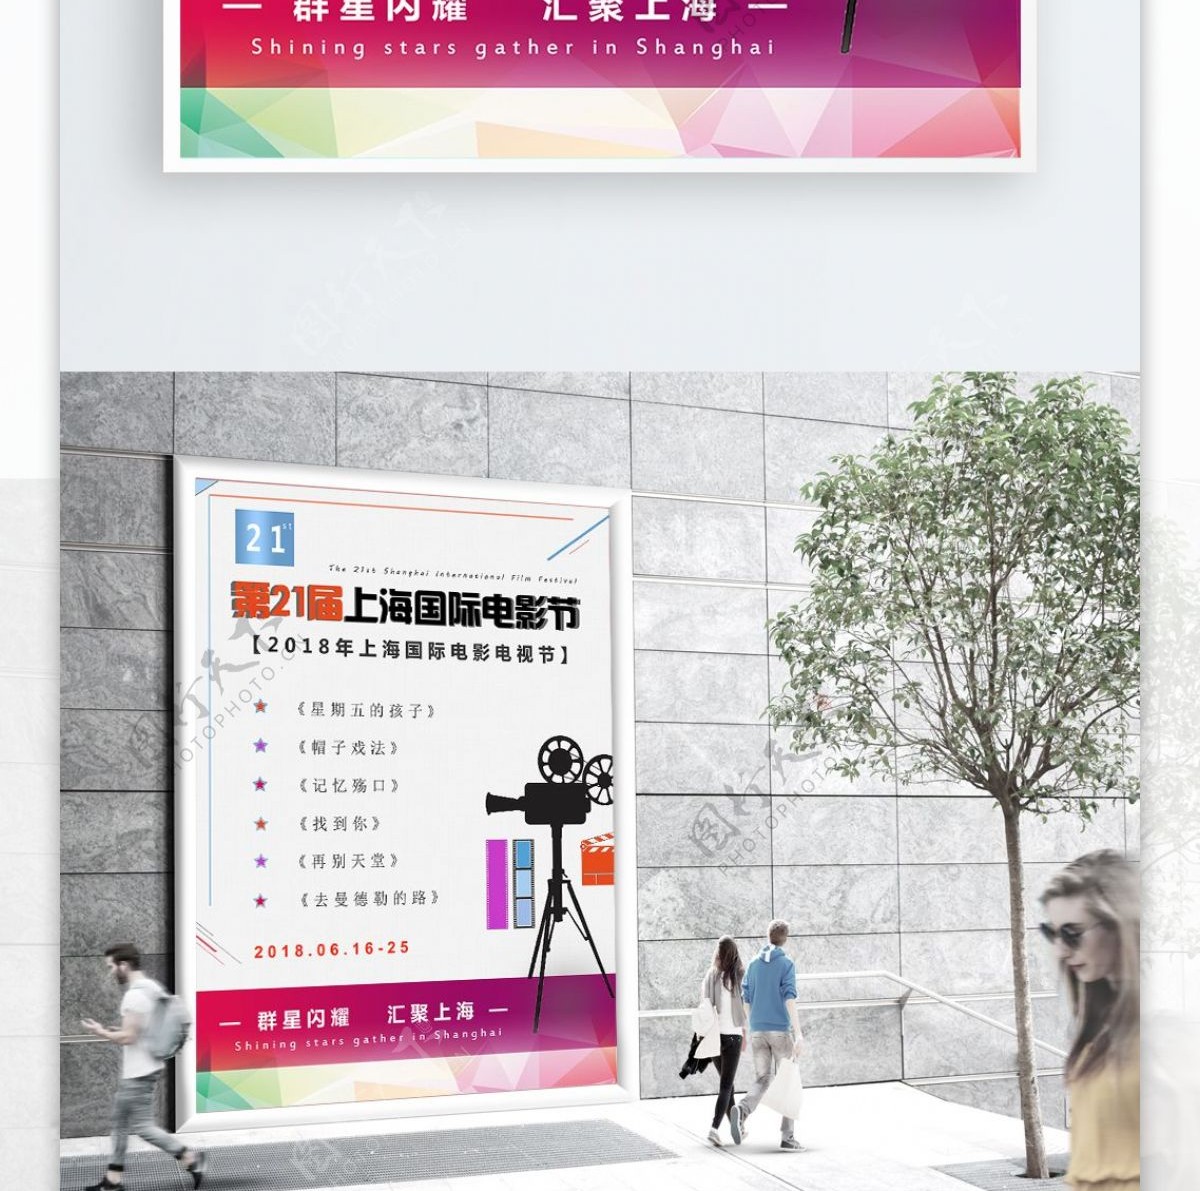 第21届上海国际电影节彩色简约海报